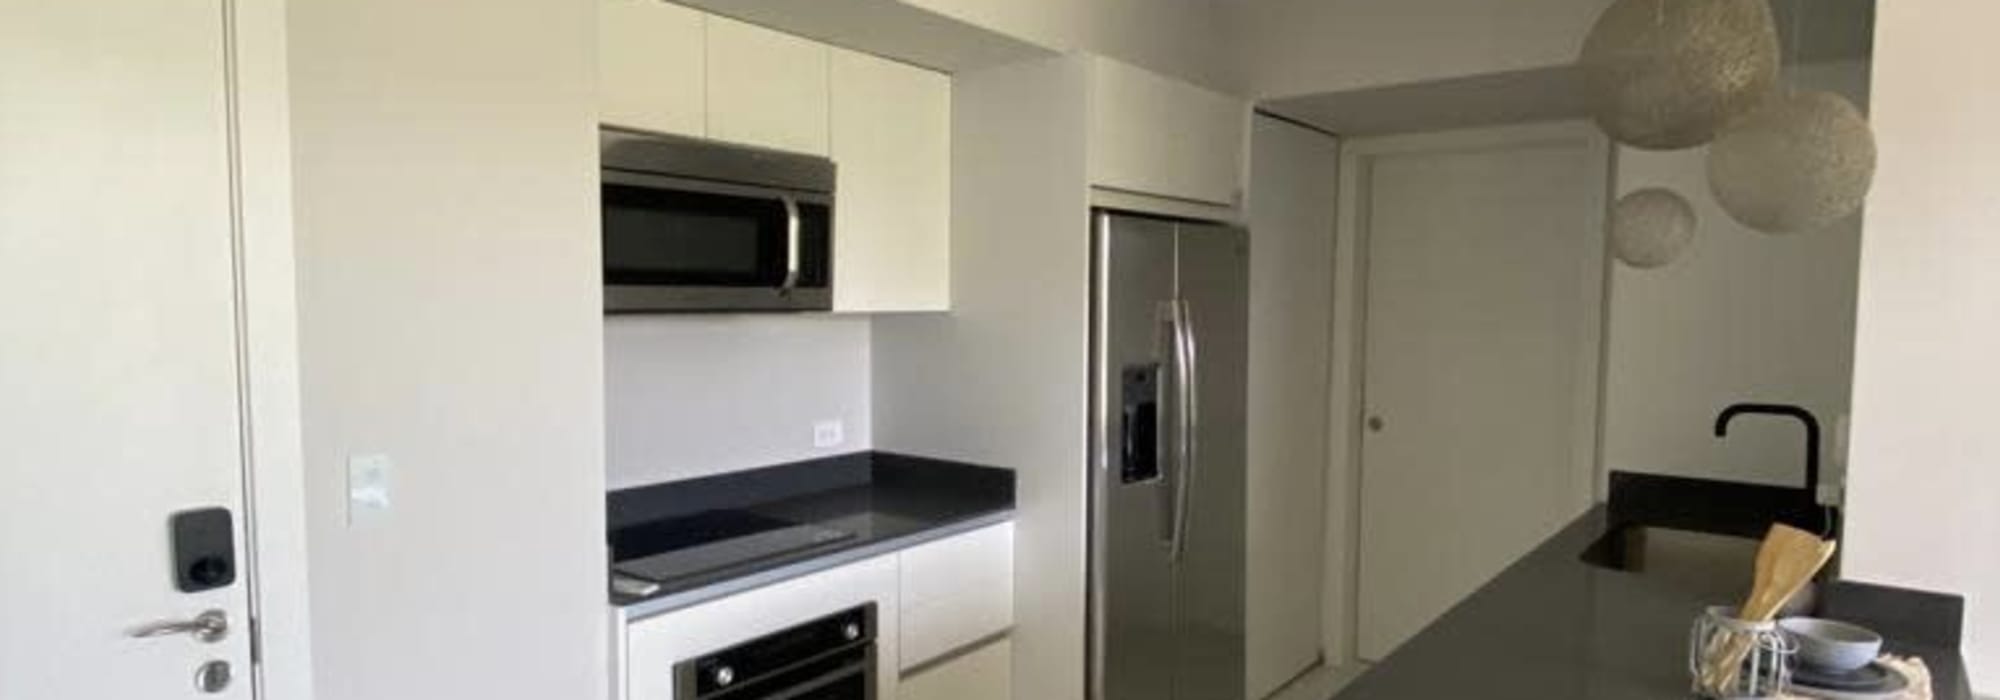 >Apartamento nuevo, en Rohrmoser cuotas  desde $600